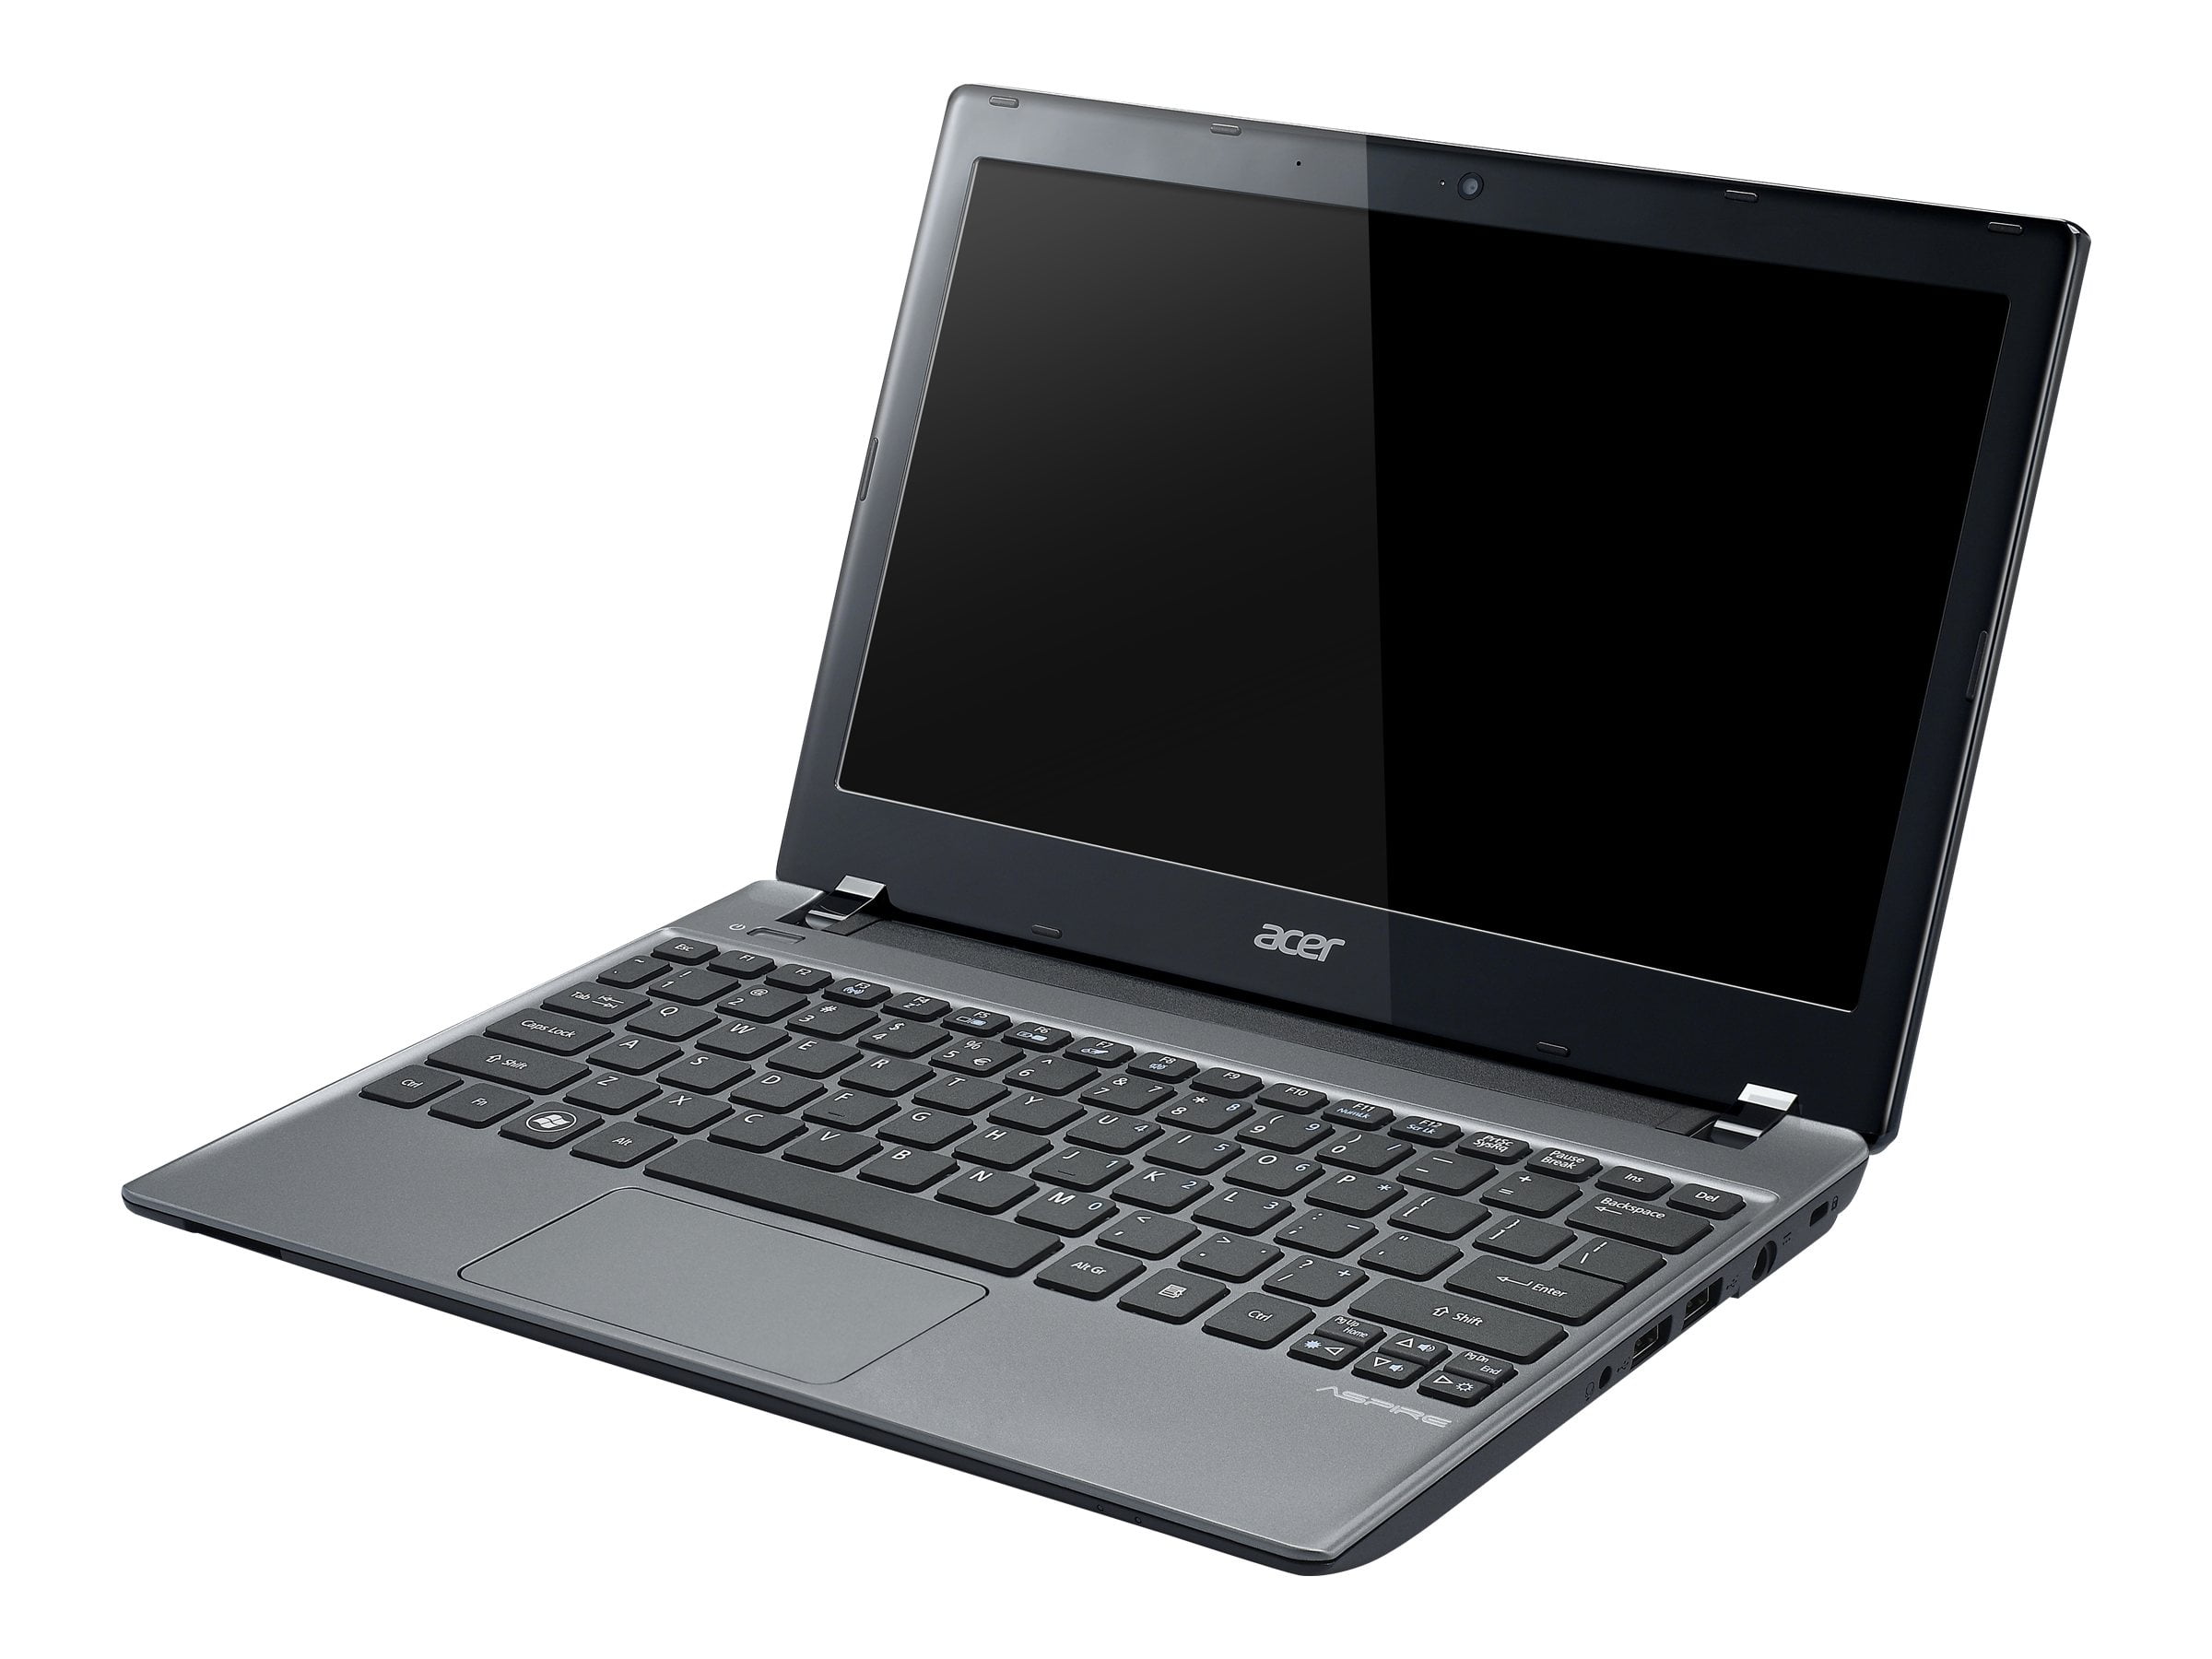 Acer Aspire V5-171-6675 Intel Core i3 2377M / 1.5 GHz - Win 8 64-bit - HD Graphics 3000 - 4 GB - 500 GB HDD - CineCrystal 1366 x 768 (HD) - silky silver - kbd: QWERTY US International - Walmart.com